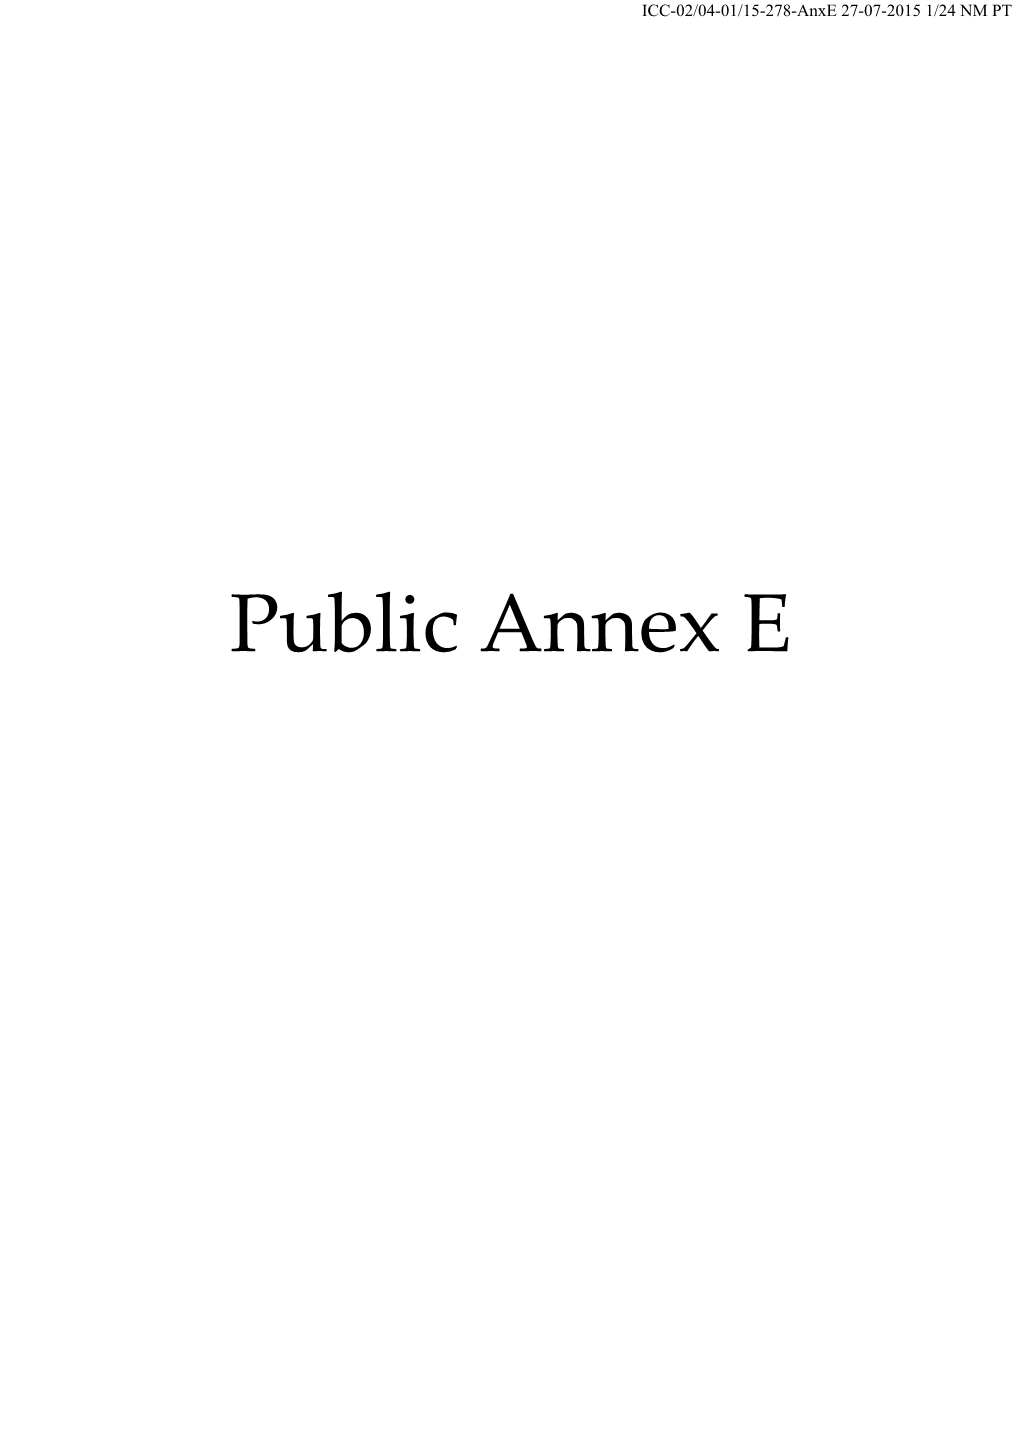 Public Annex E ICC-02/04-01/15-278-Anxe 27-07-2015 2/24 NM PT